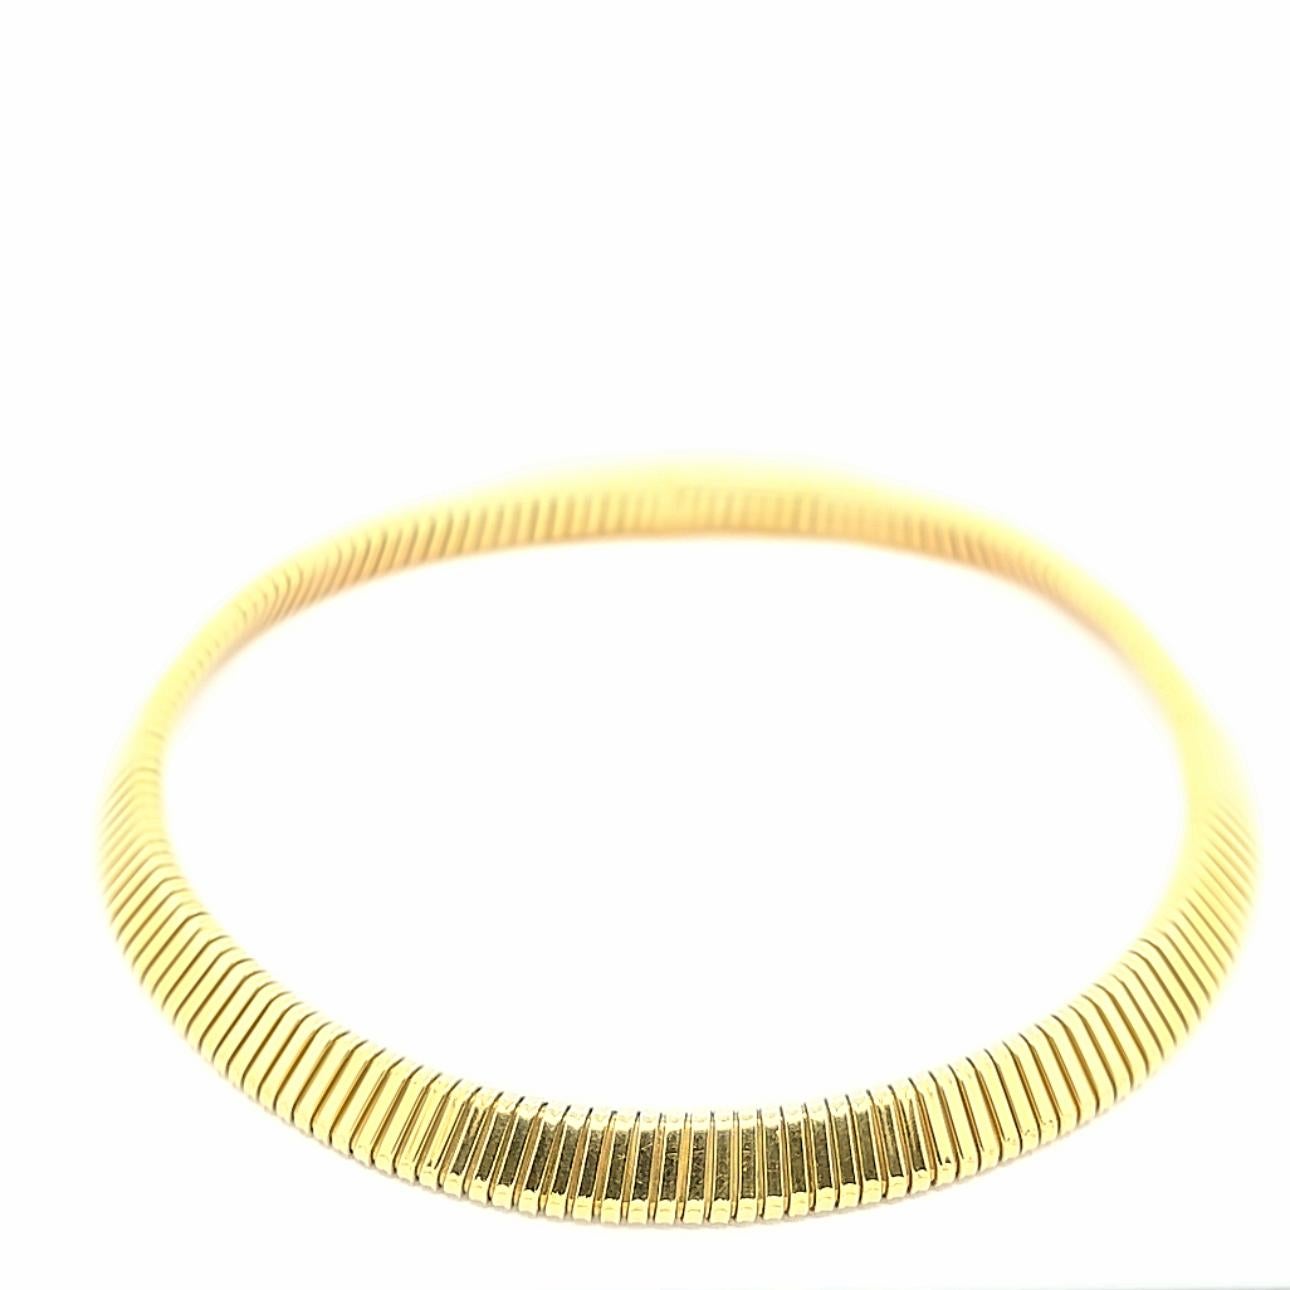 Collier Tubogas intemporel réalisé par le célèbre Weingrill vers les années 1980, mettant en valeur l'or jaune 18k dans un collier parfaitement équilibré. Grâce à ses dimensions douces et à son poids, ce bijou convient aussi bien au quotidien qu'aux